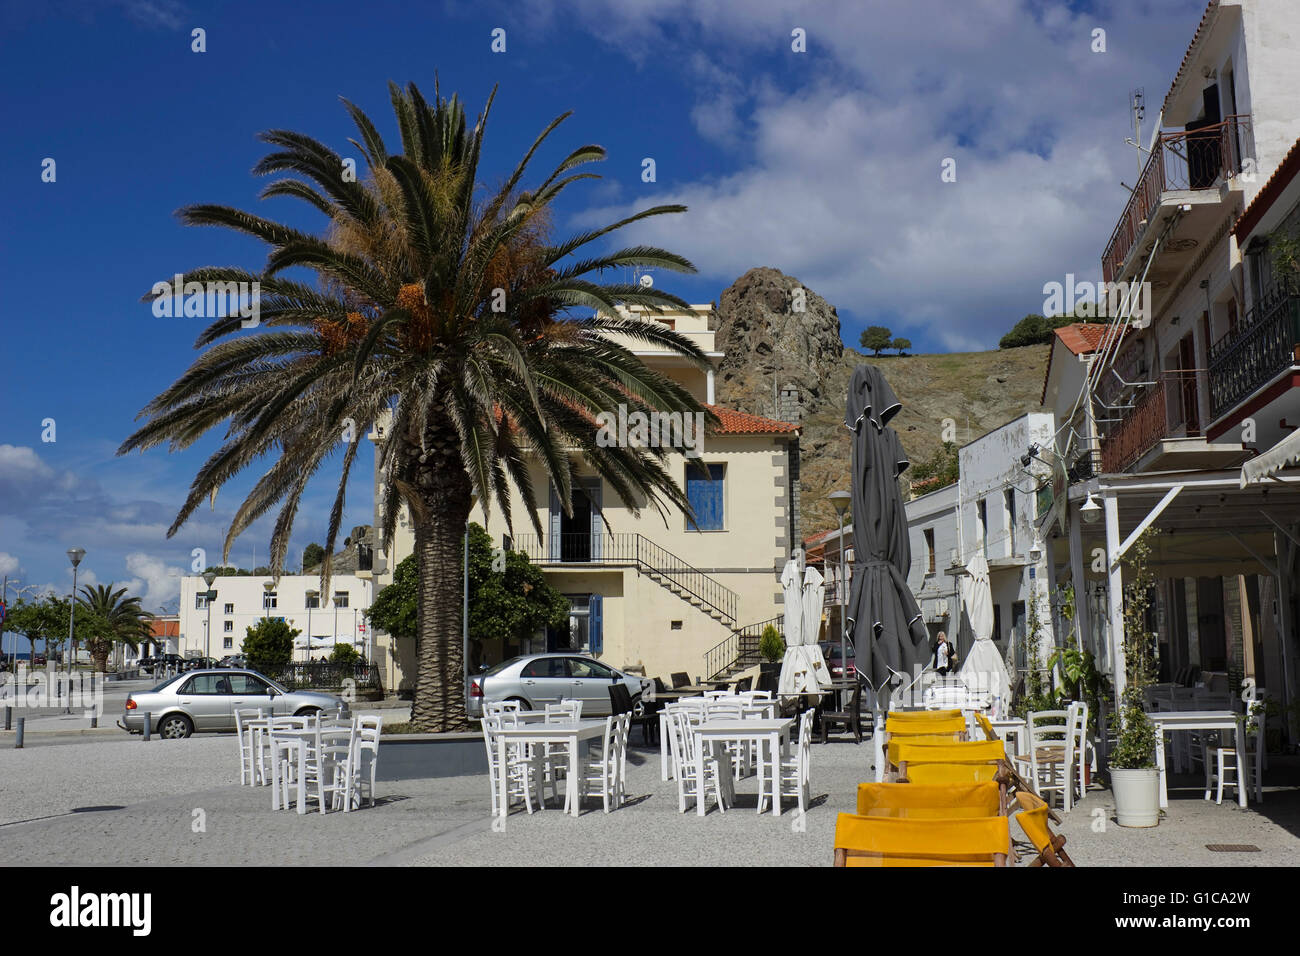 Palmier et haut vide café-restaurant les tables avec des chaises sur le trottoir de Myrinas promenade. Limnos, Grèce Banque D'Images